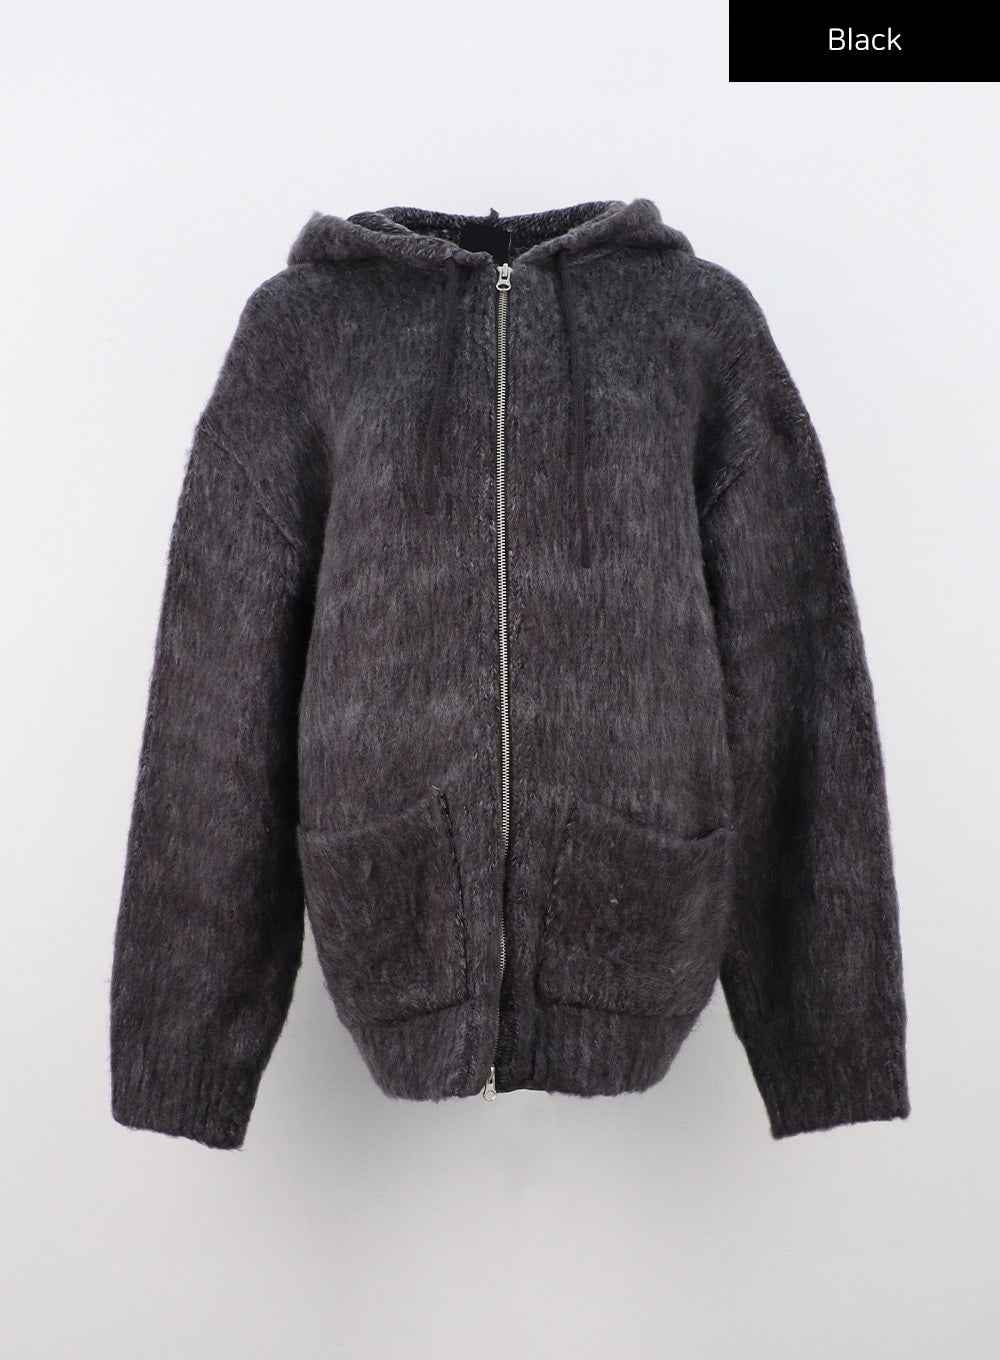 two-way-zip-up-knit-hoodie-jacket-cn303 / Black